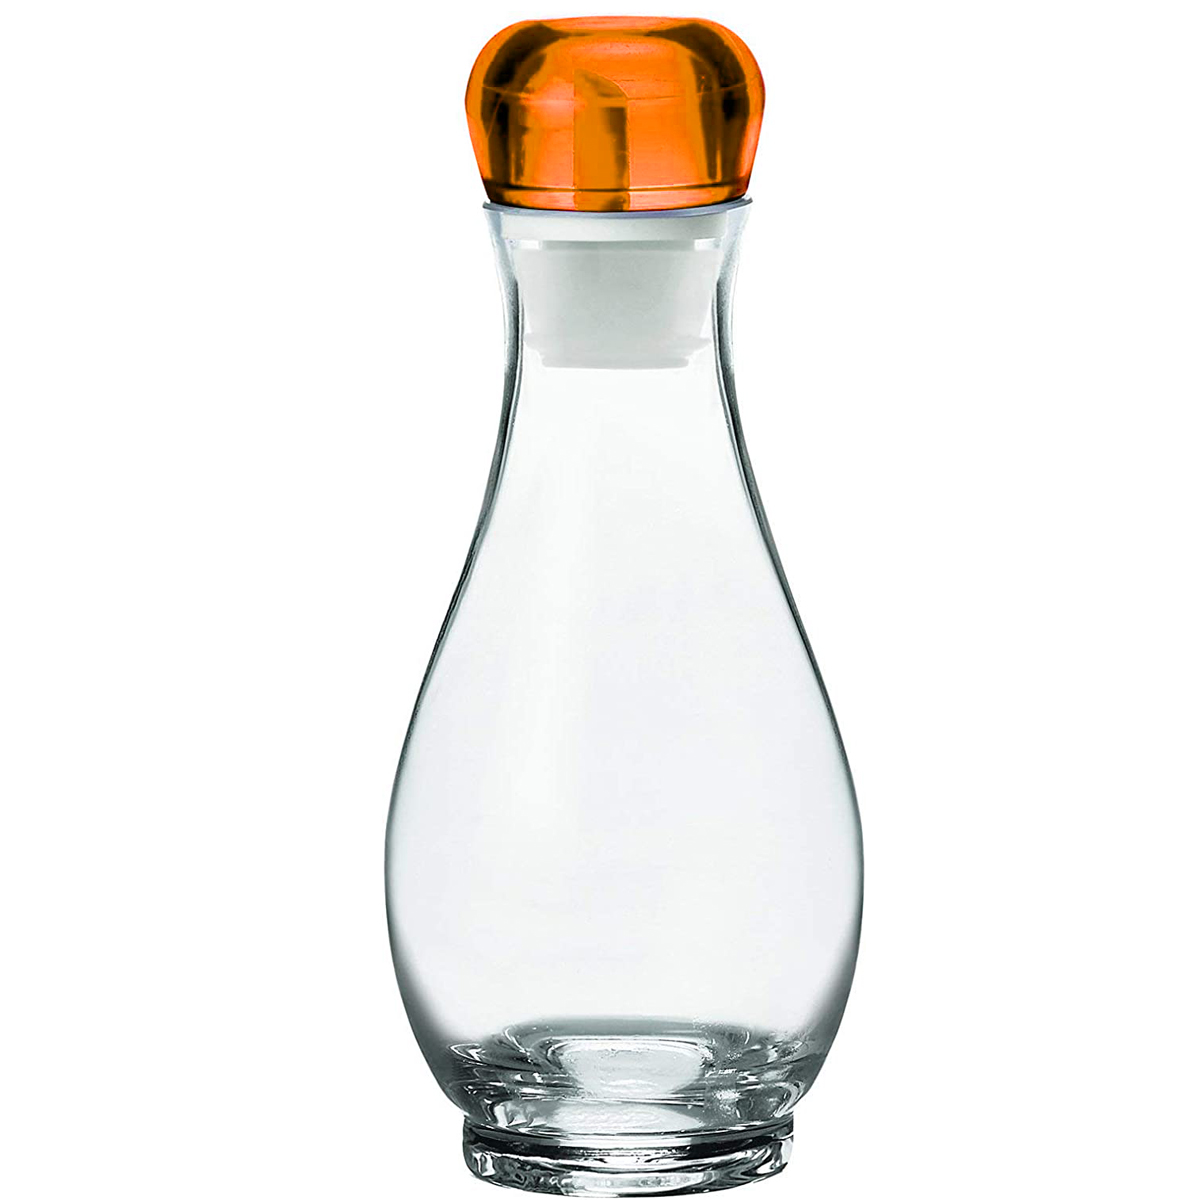 guzzini オイルボトル ビネガーボトル 500ml オリーブオイル用 ガラス 